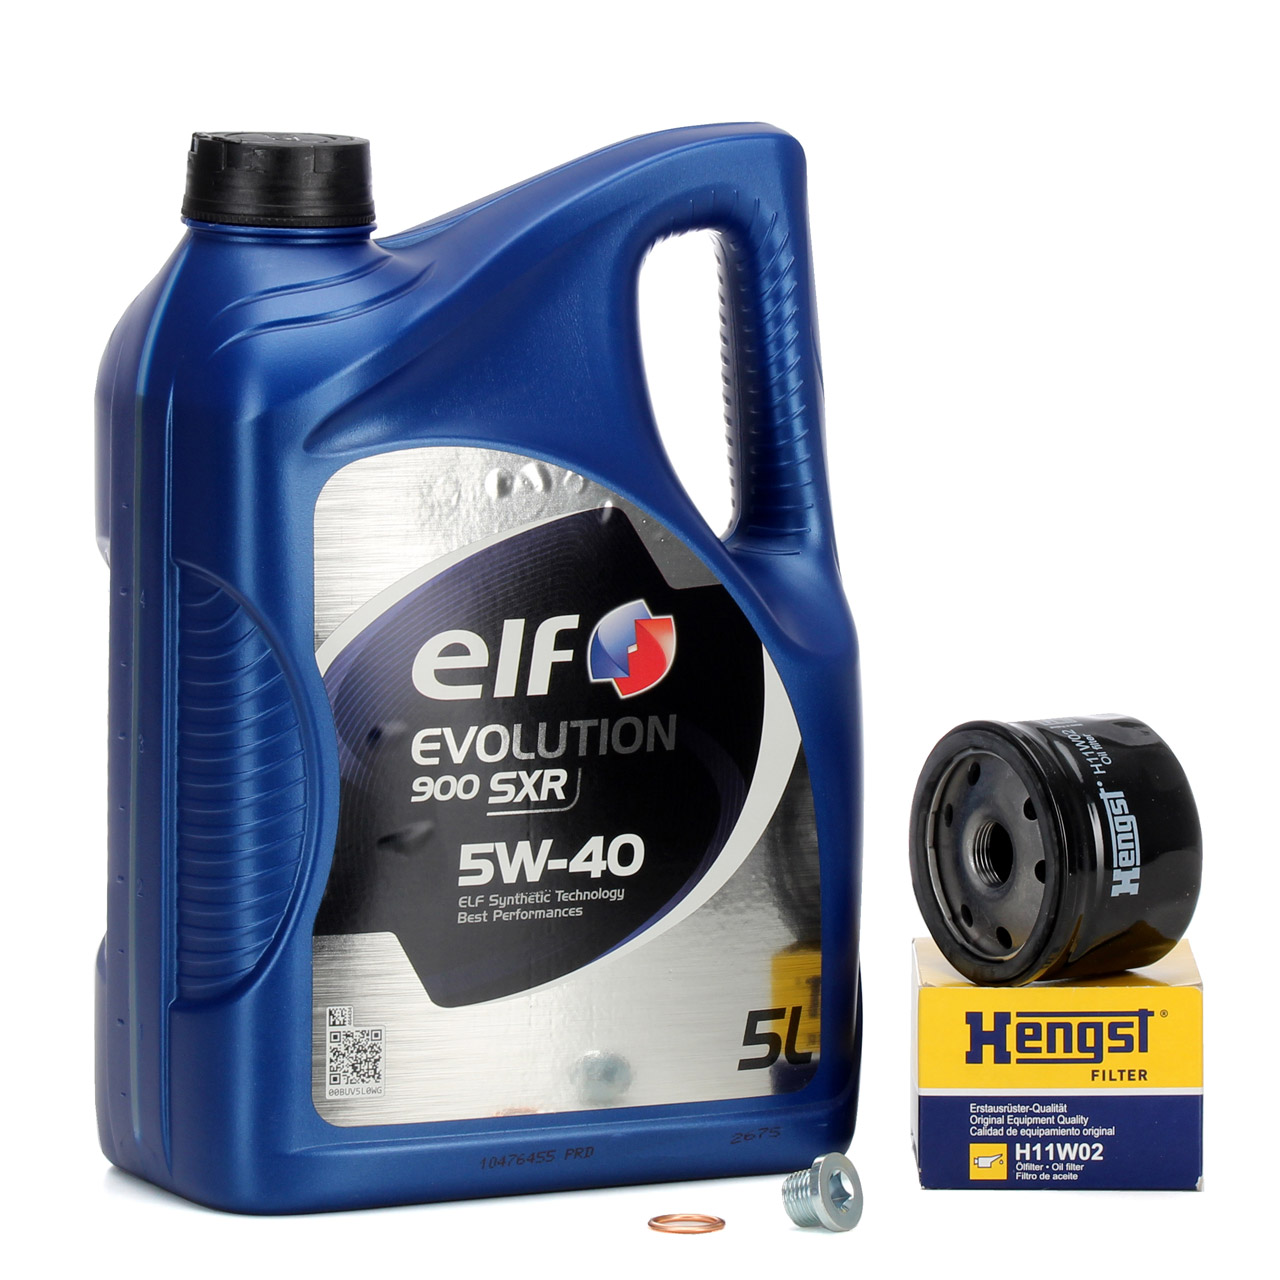 5L elf Evolution 900 SXR 5W-40 Motoröl + HENGST Ölfilter für NISSAN OPEL RENAULT